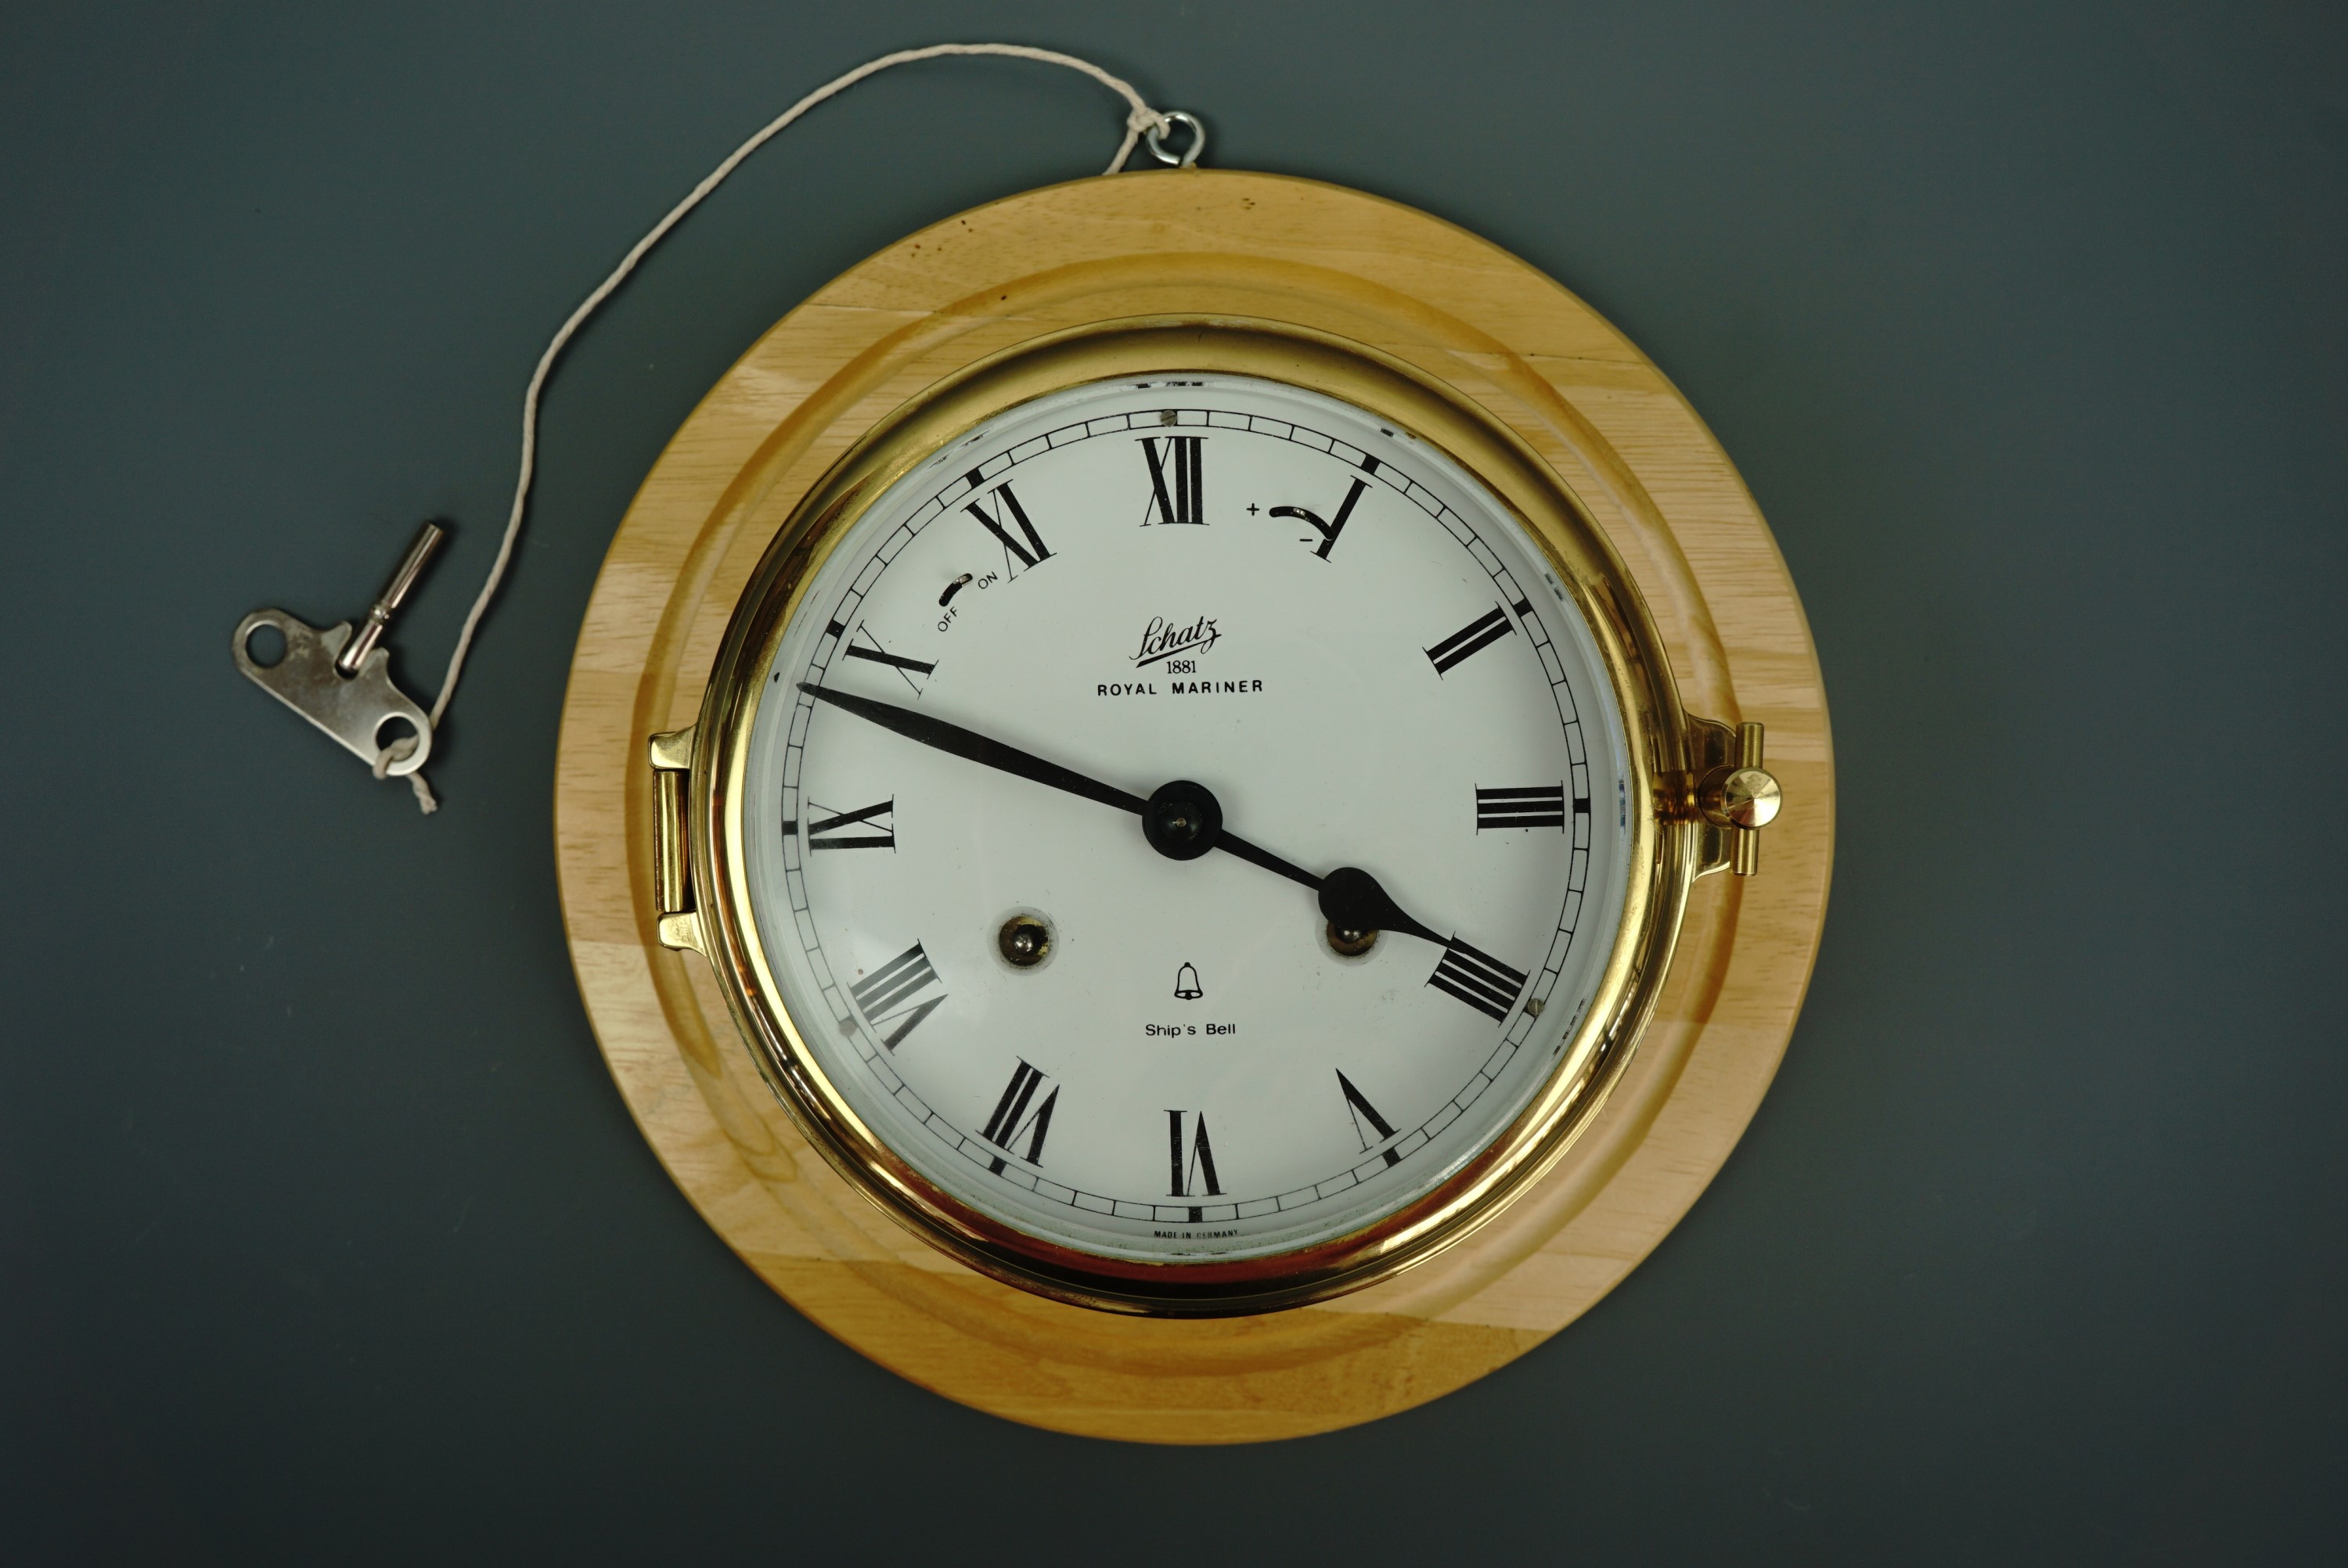 A Schatz Royal Mariner Ship's Bell brass bulkhead clock, having a two-train mechanical movement